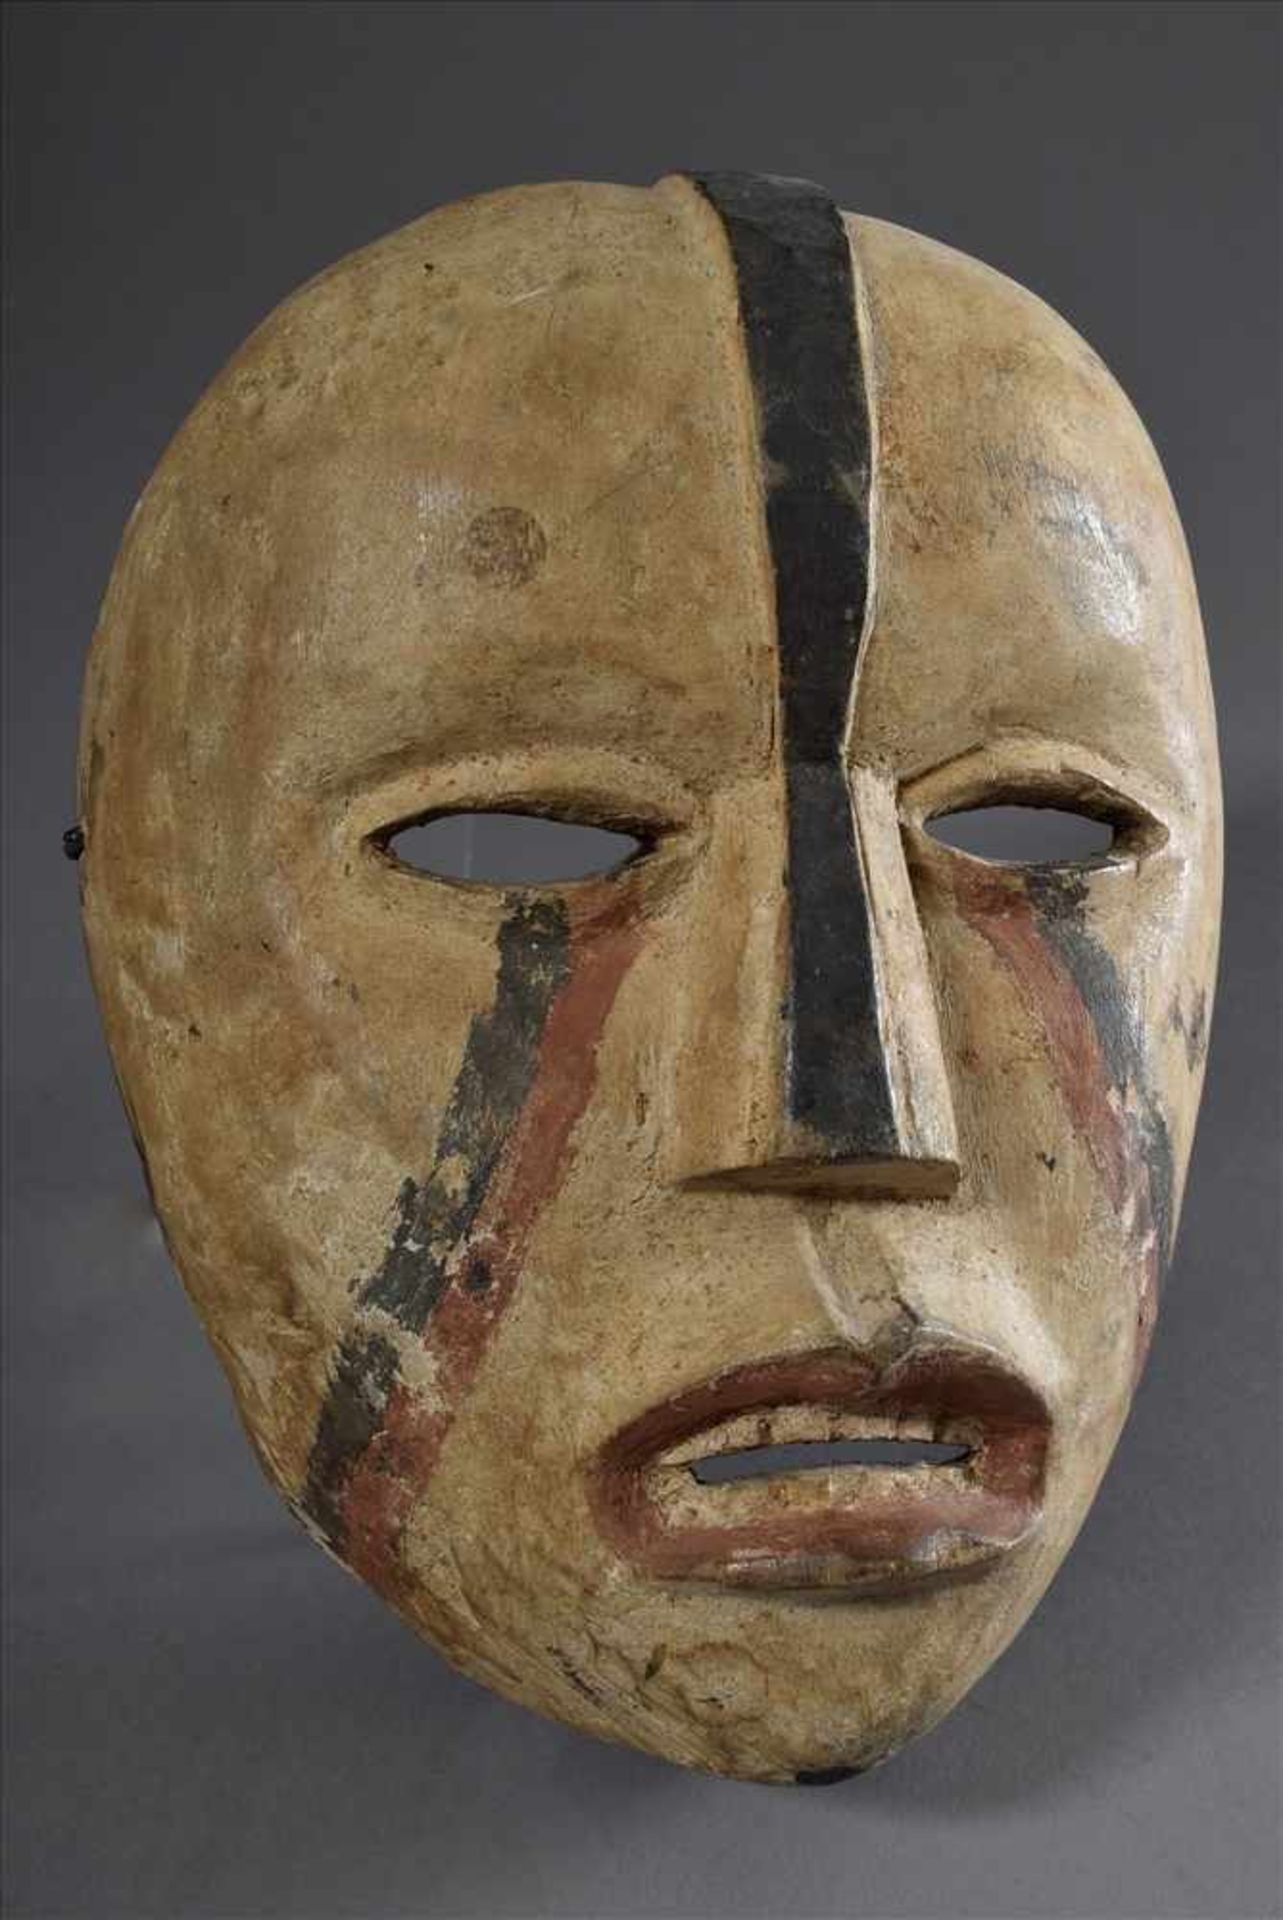 Holz Maske, weiß/rot/schwarz gefasst, 28x19cmWood mask, white/red/black painted, 28x19cm